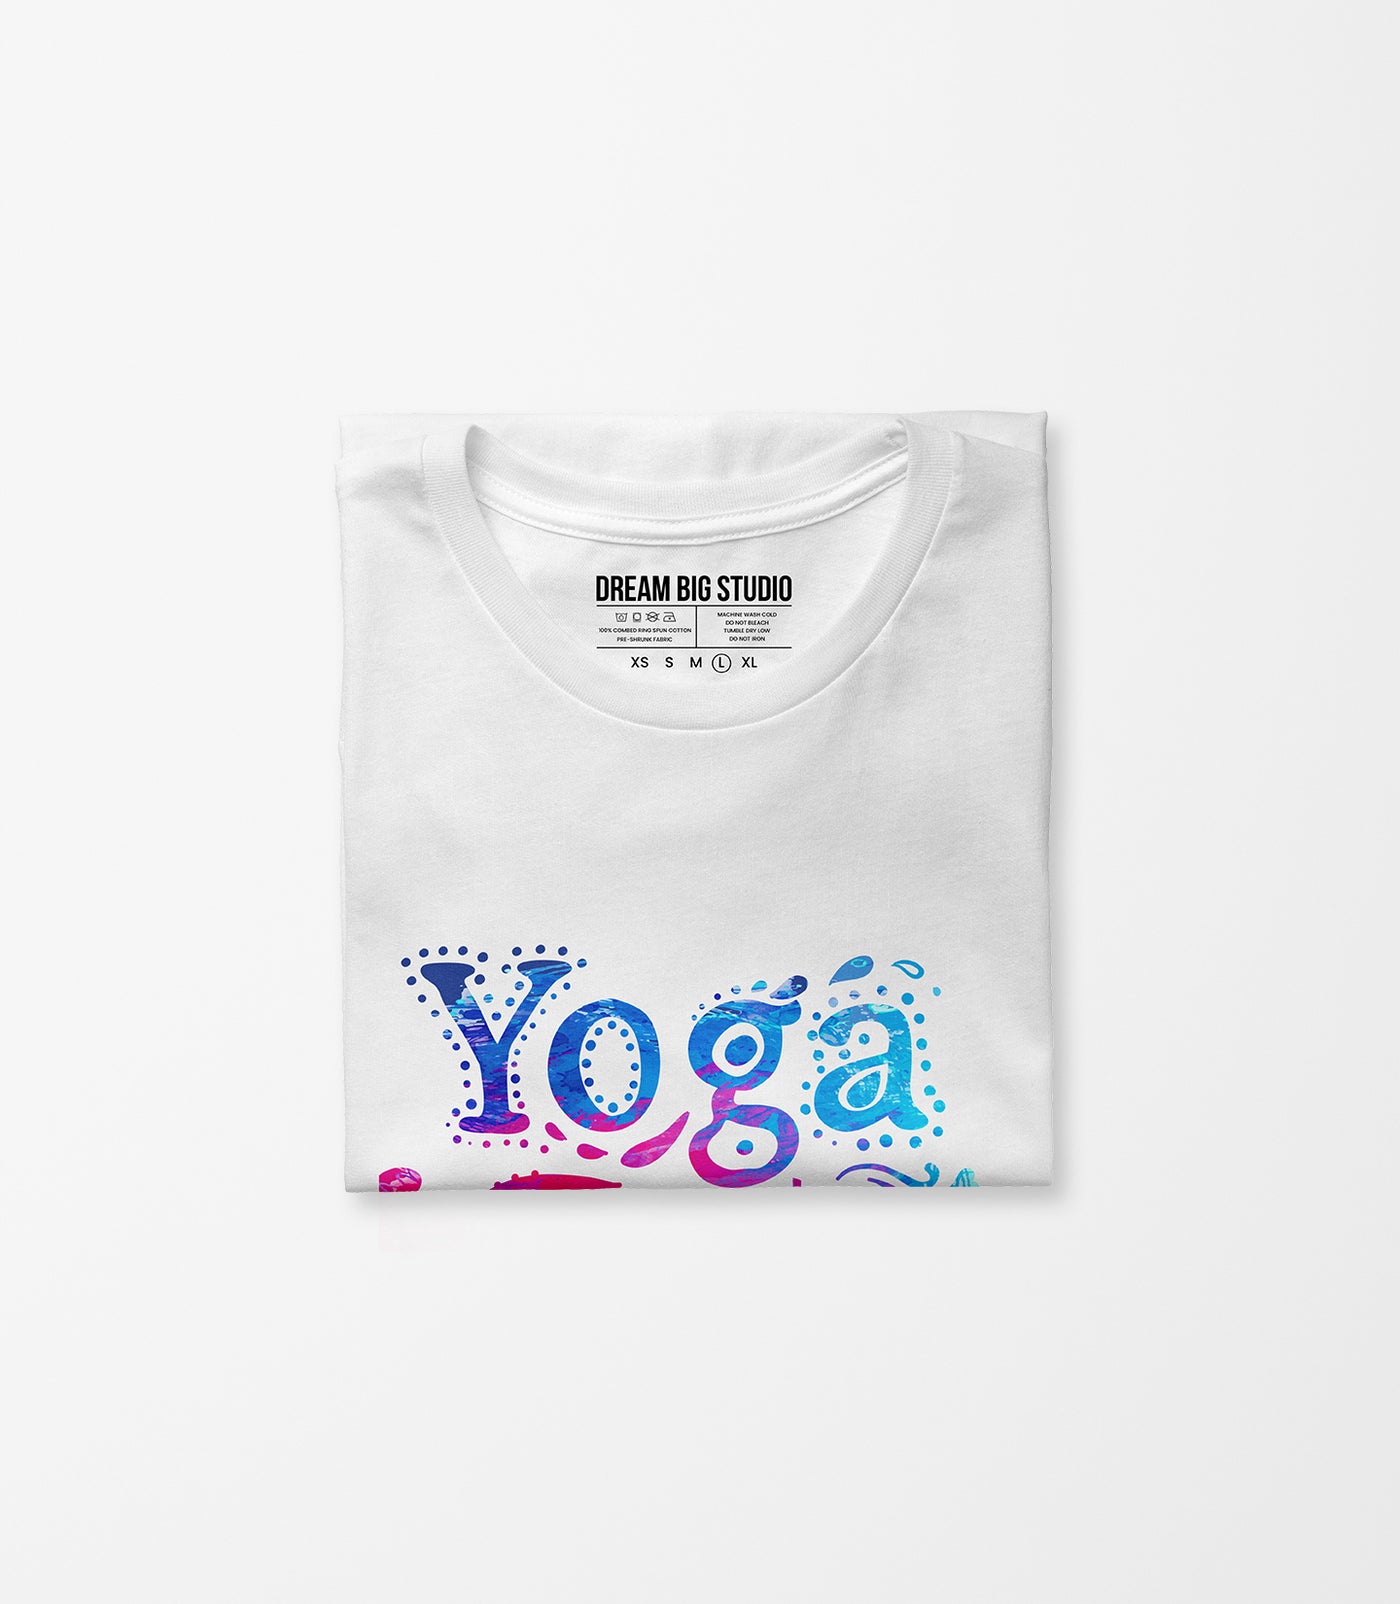 Yoga Studio Tee